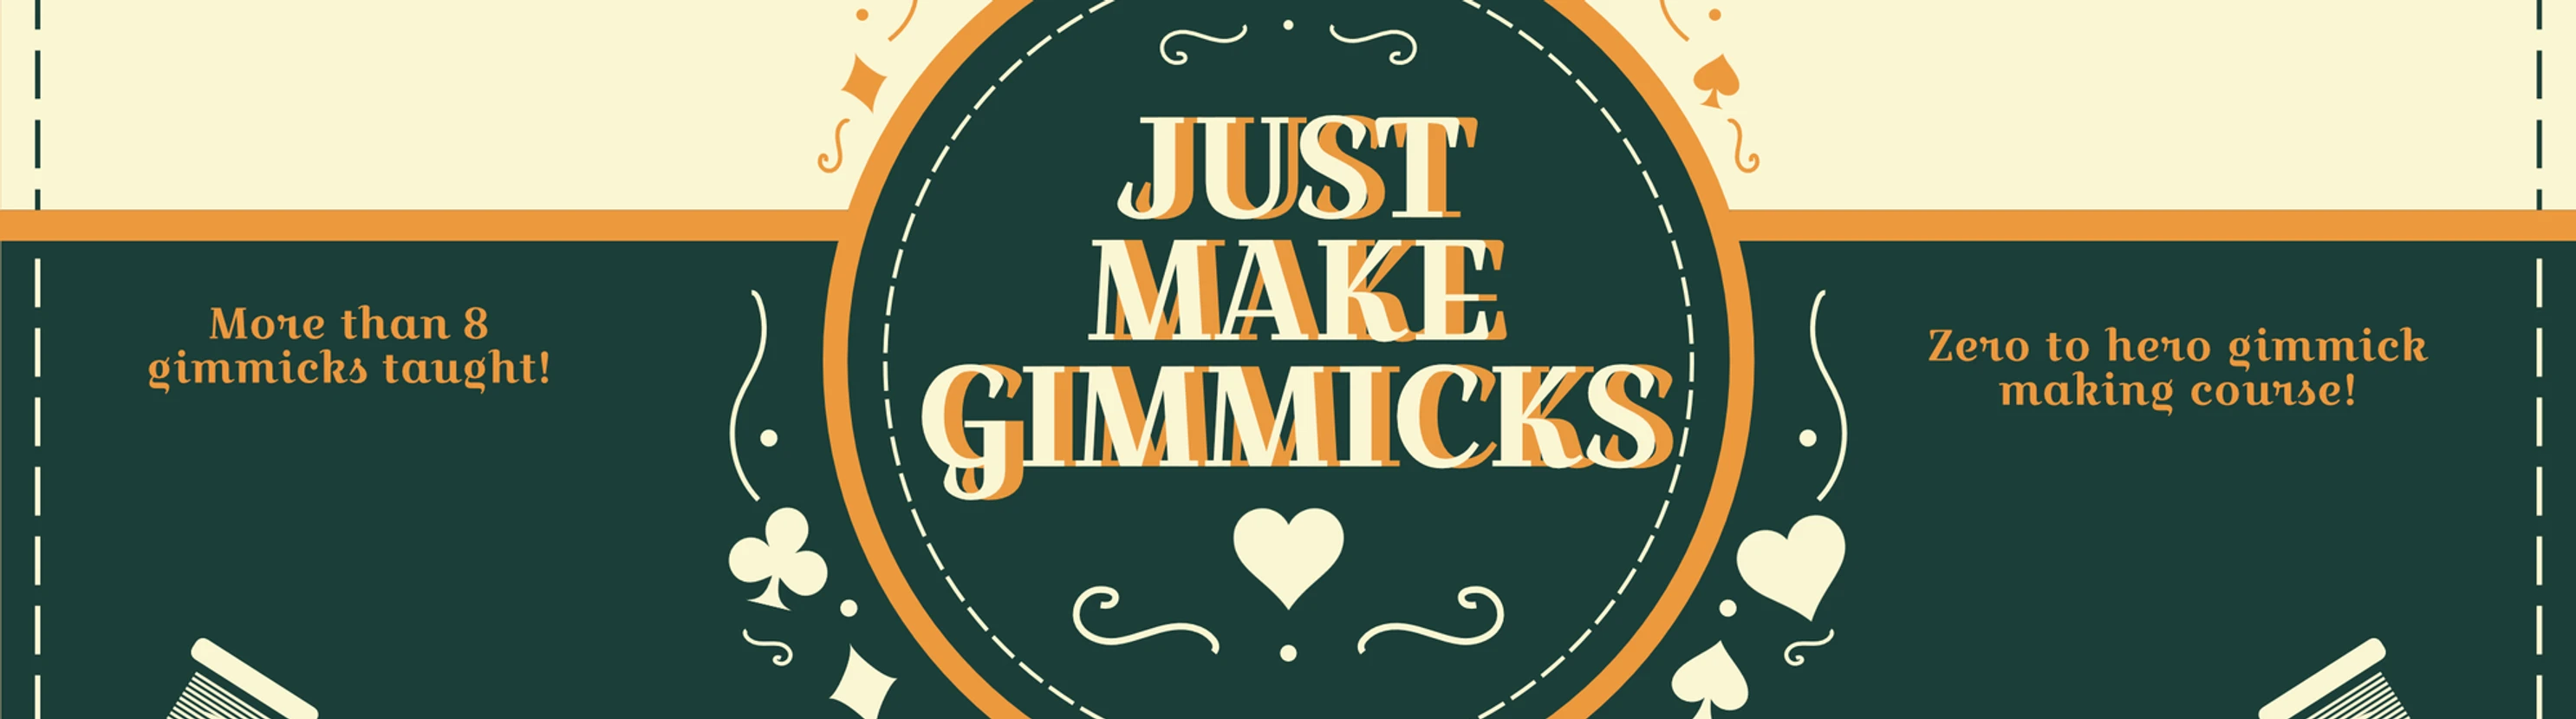 Jamie Daws - Just Make Gimmicks